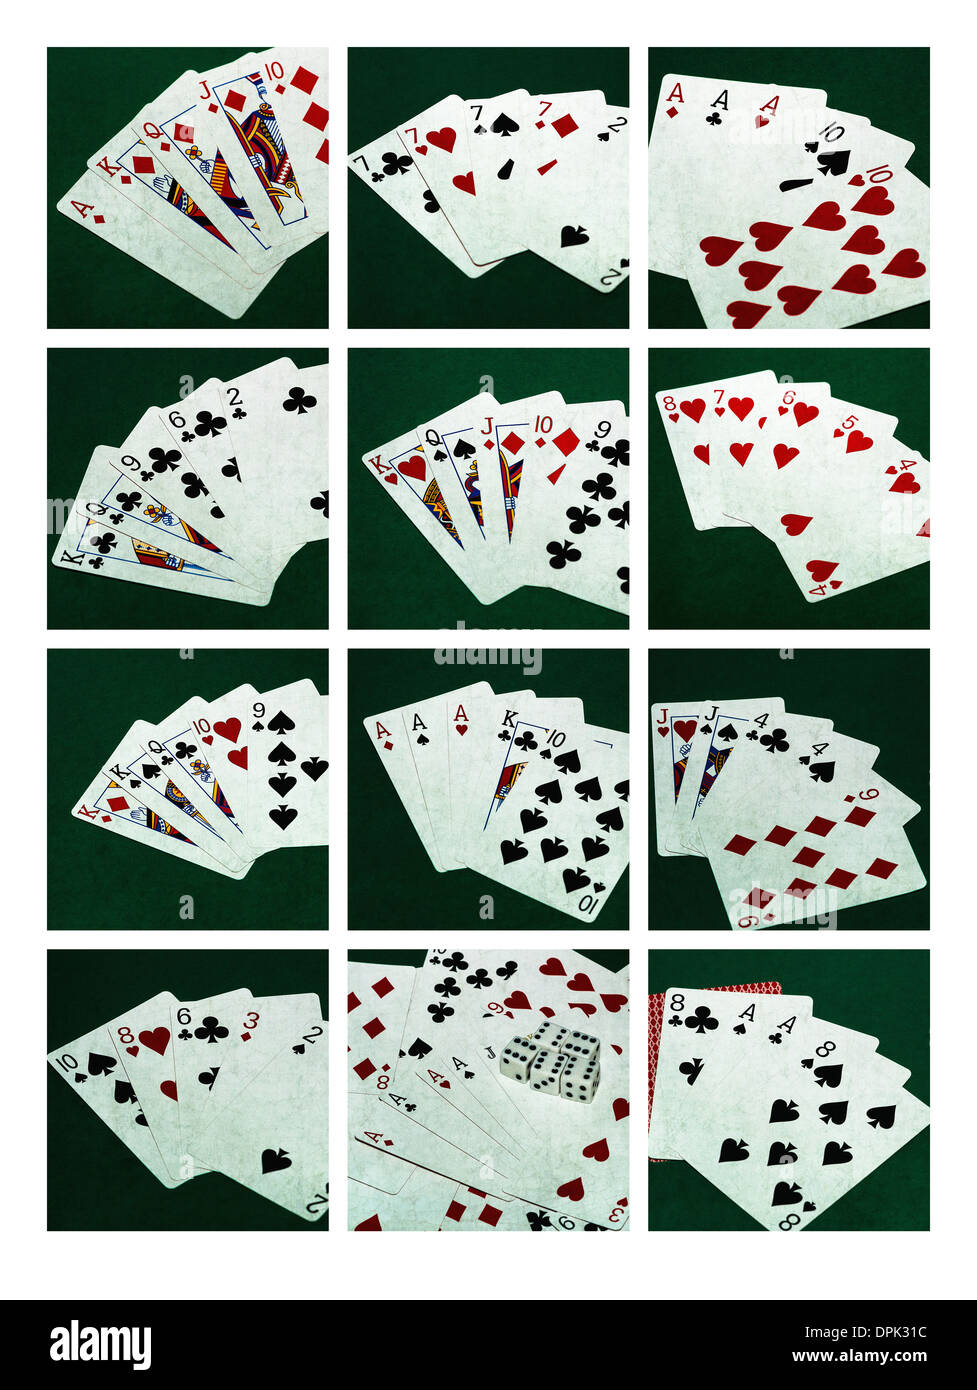 Poker-Hände 2 Collage. Collage aus zwölf Fotos von zehn standard-Poker-Hände, plus Hand des toten Mannes Stockfoto